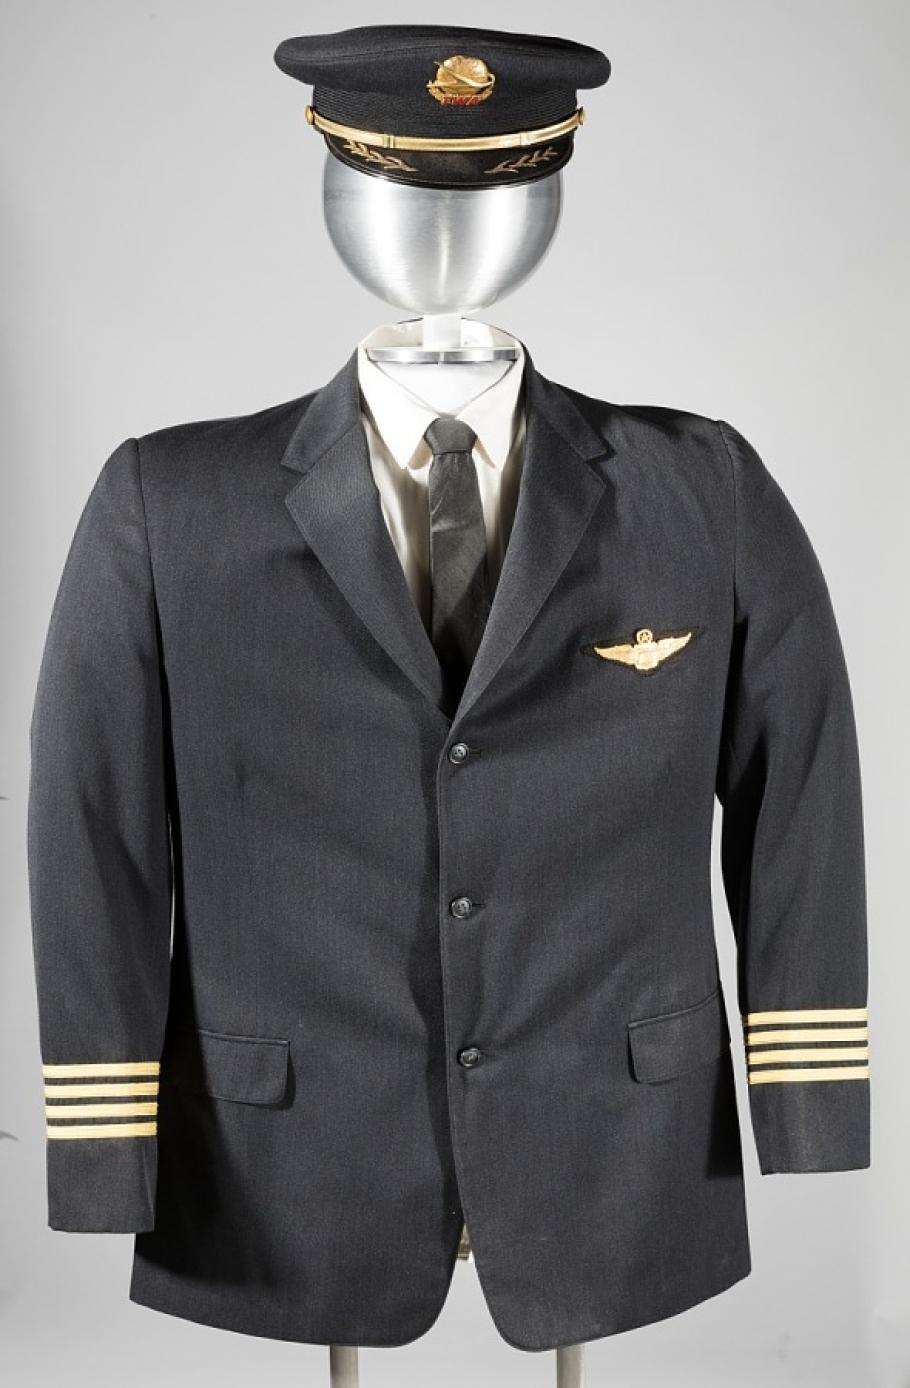 A photo of a male pilot's uniform on a mannequin. 